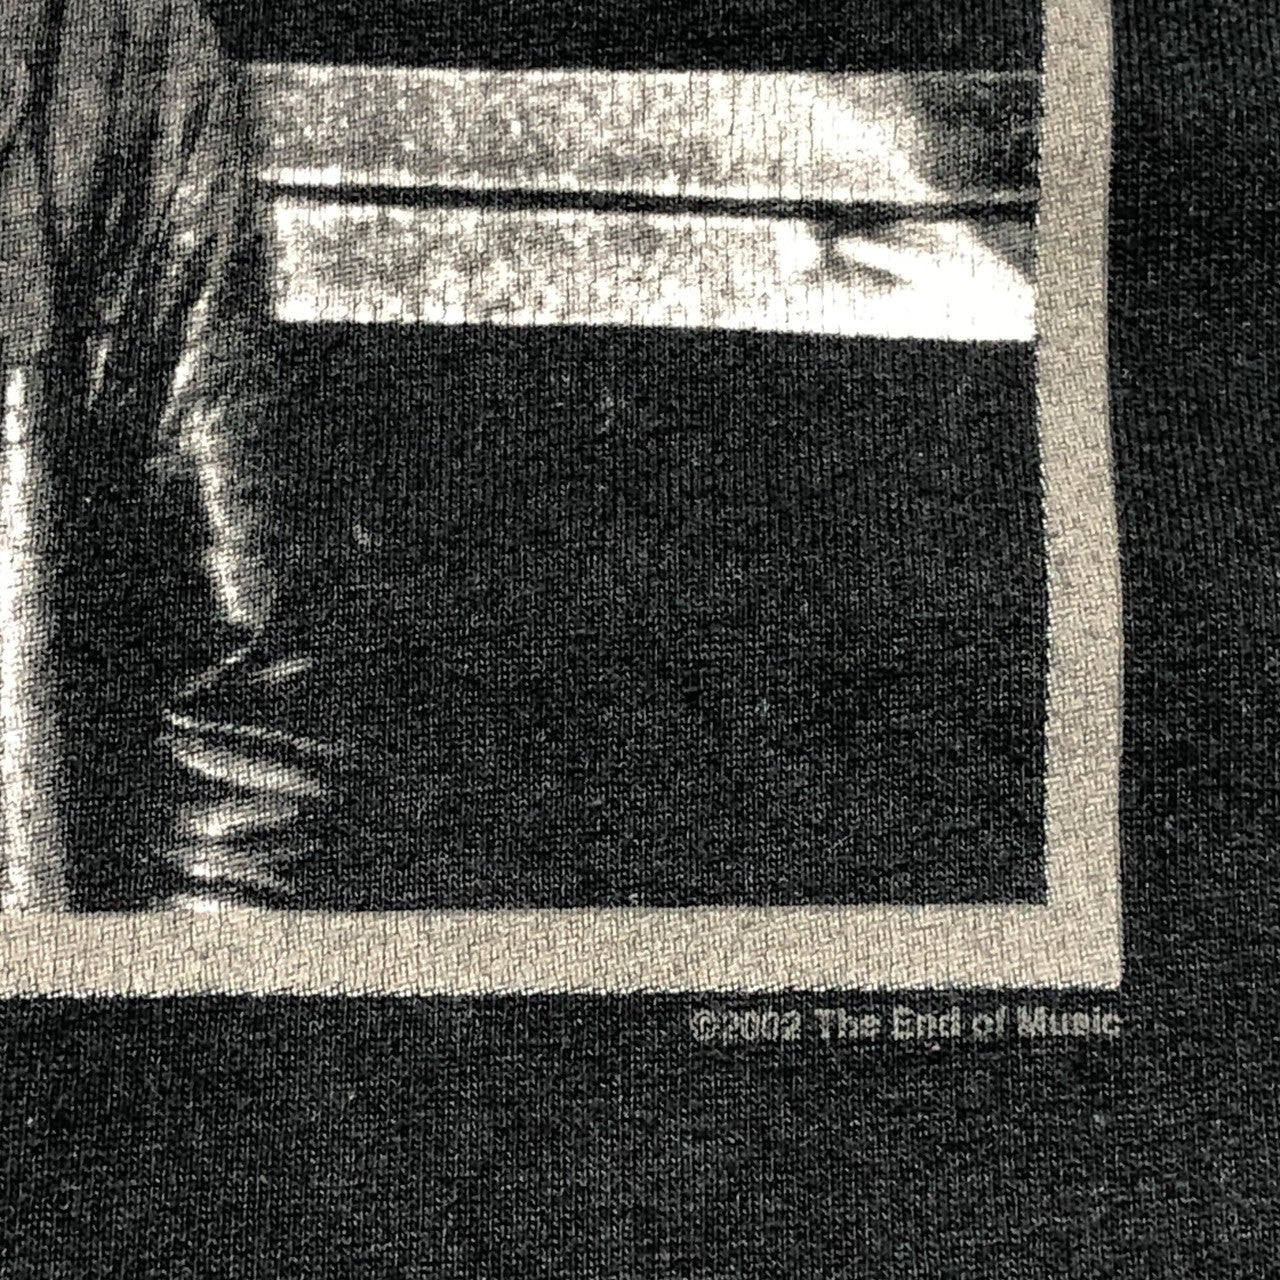 VINTAGE(ヴィンテージ) 00's "©2002 The End of Music" KURT COBAIN photo T-shirt フォト Tシャツ 表記無し(XL程度)  ブラック ヴィンテージ カートコバーン ニルバーナ